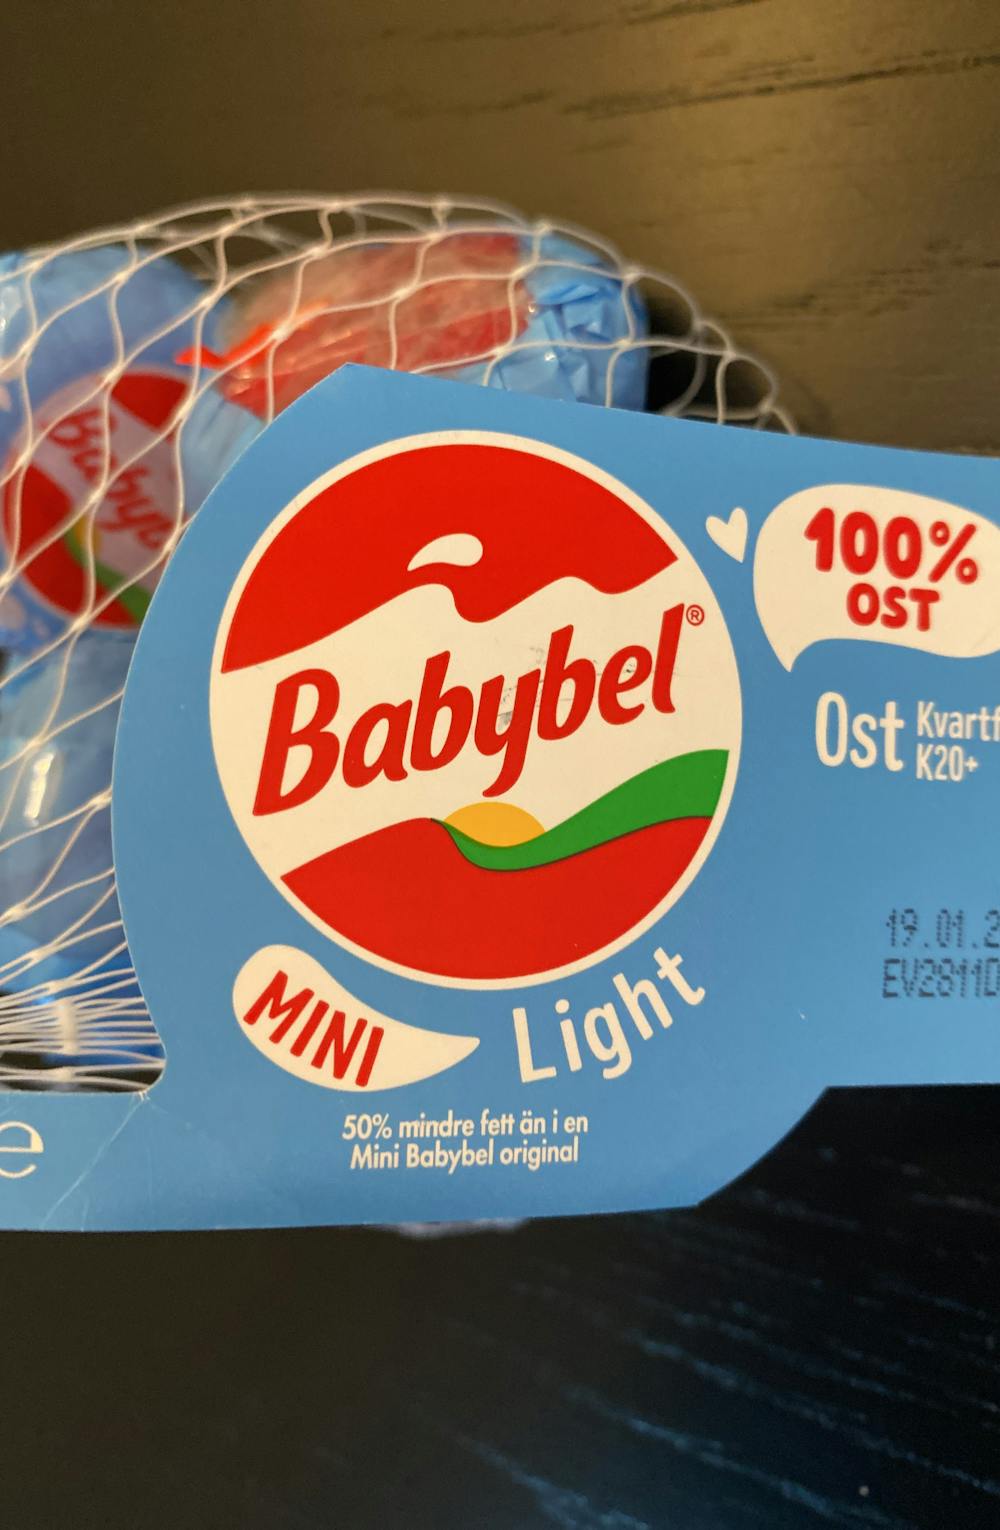 Babybel mini, light, Babybel